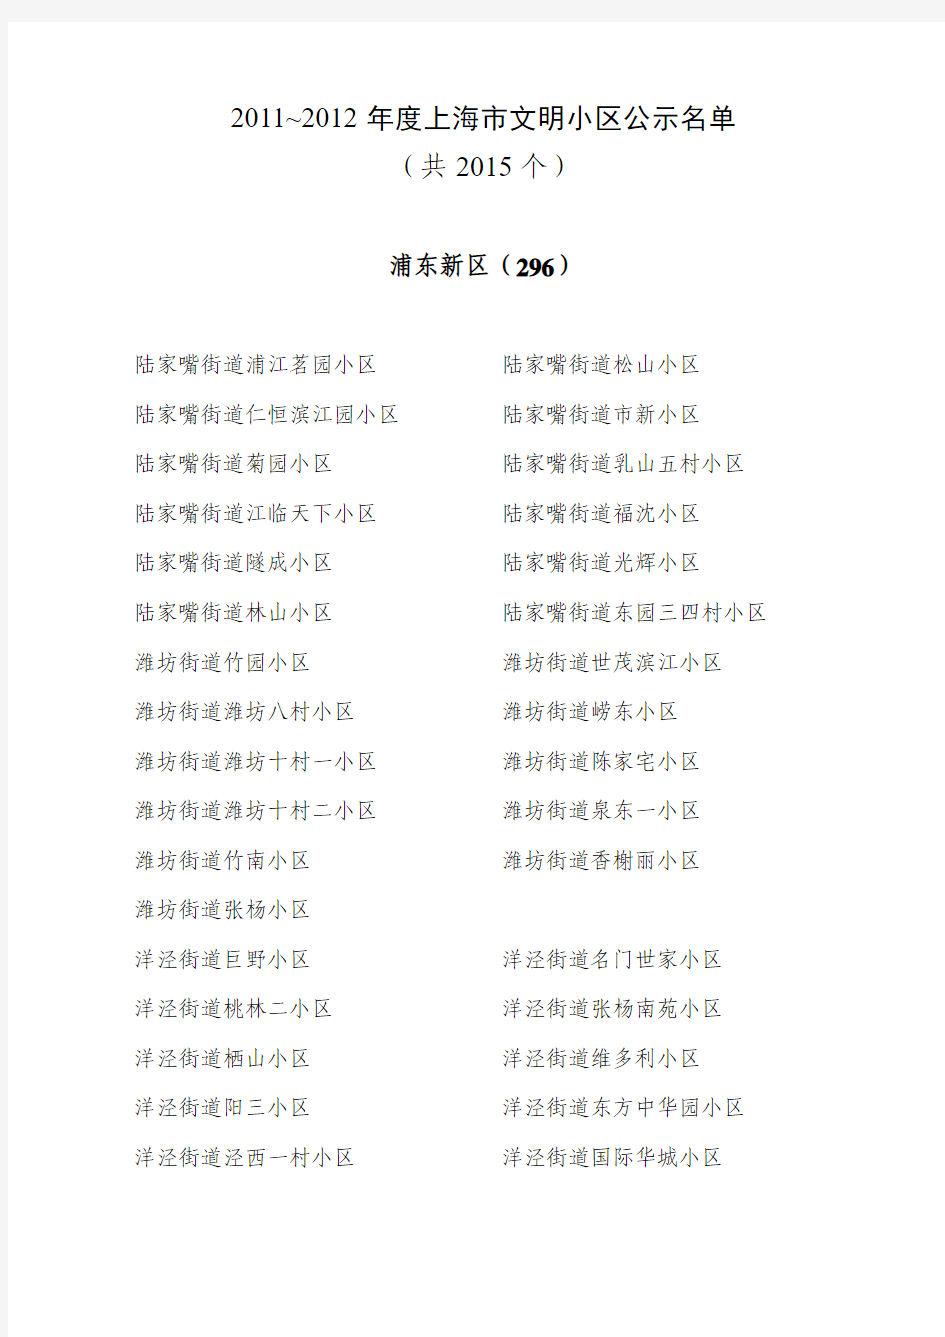 2007~2008年度上海市文明小区送审名单